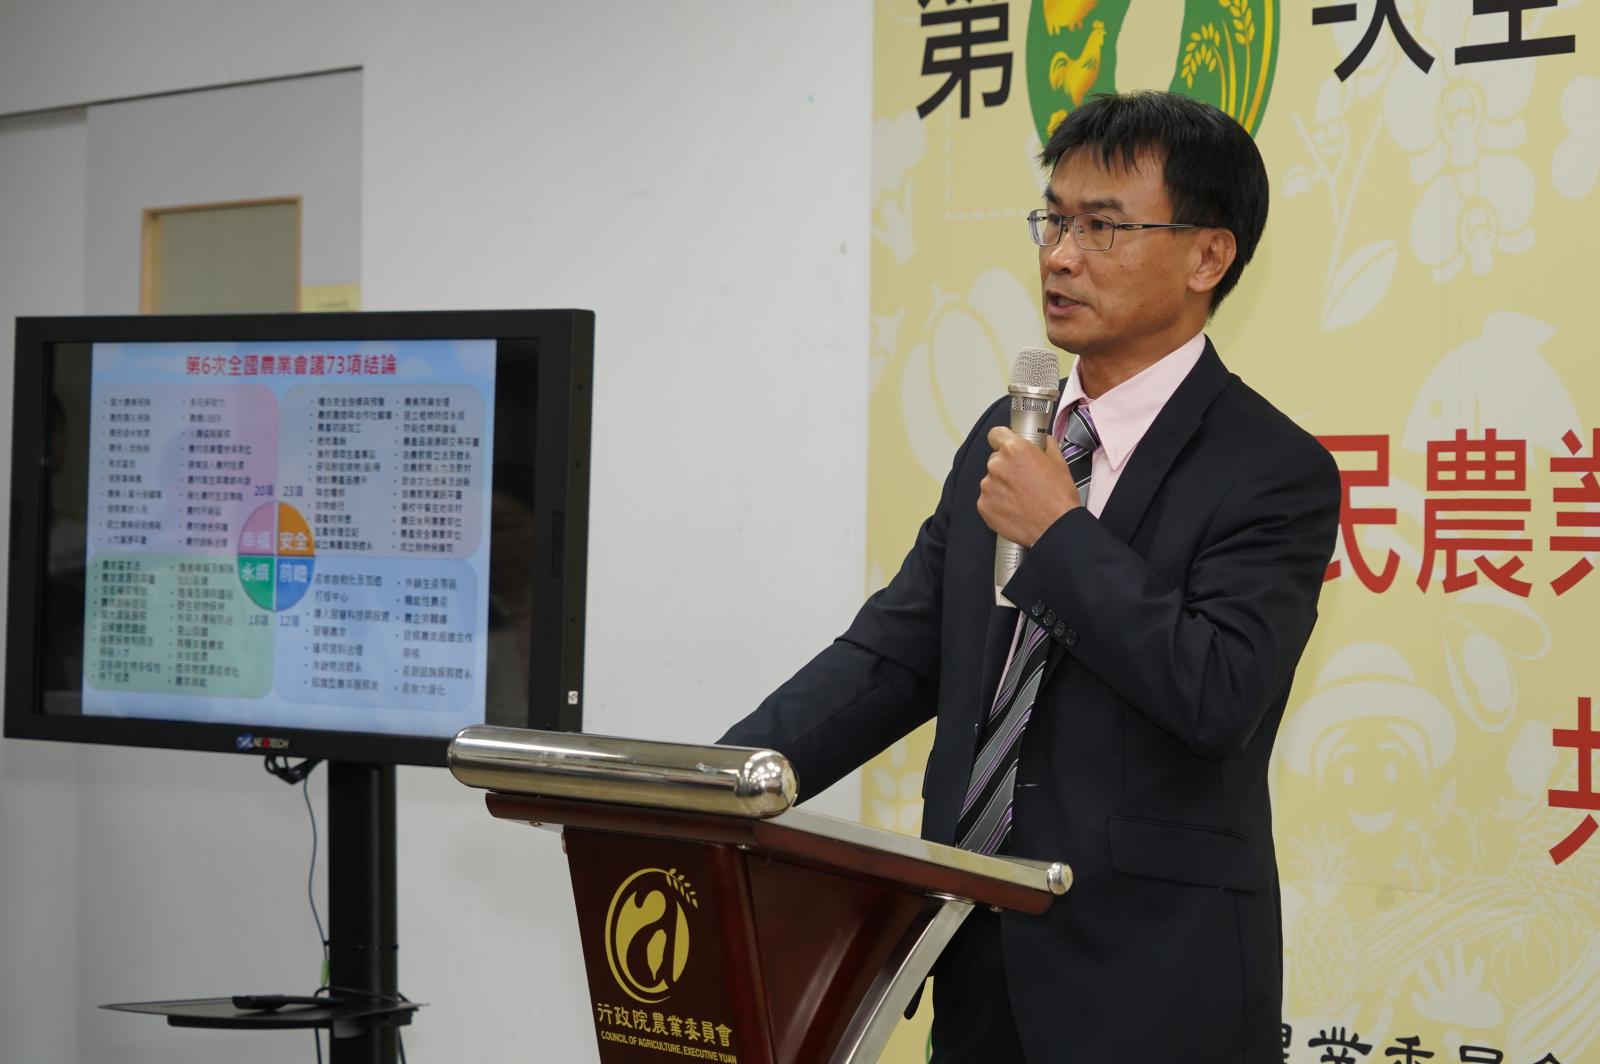 農委會陳吉仲主委說明第6次全國農業會議結論辦理情形